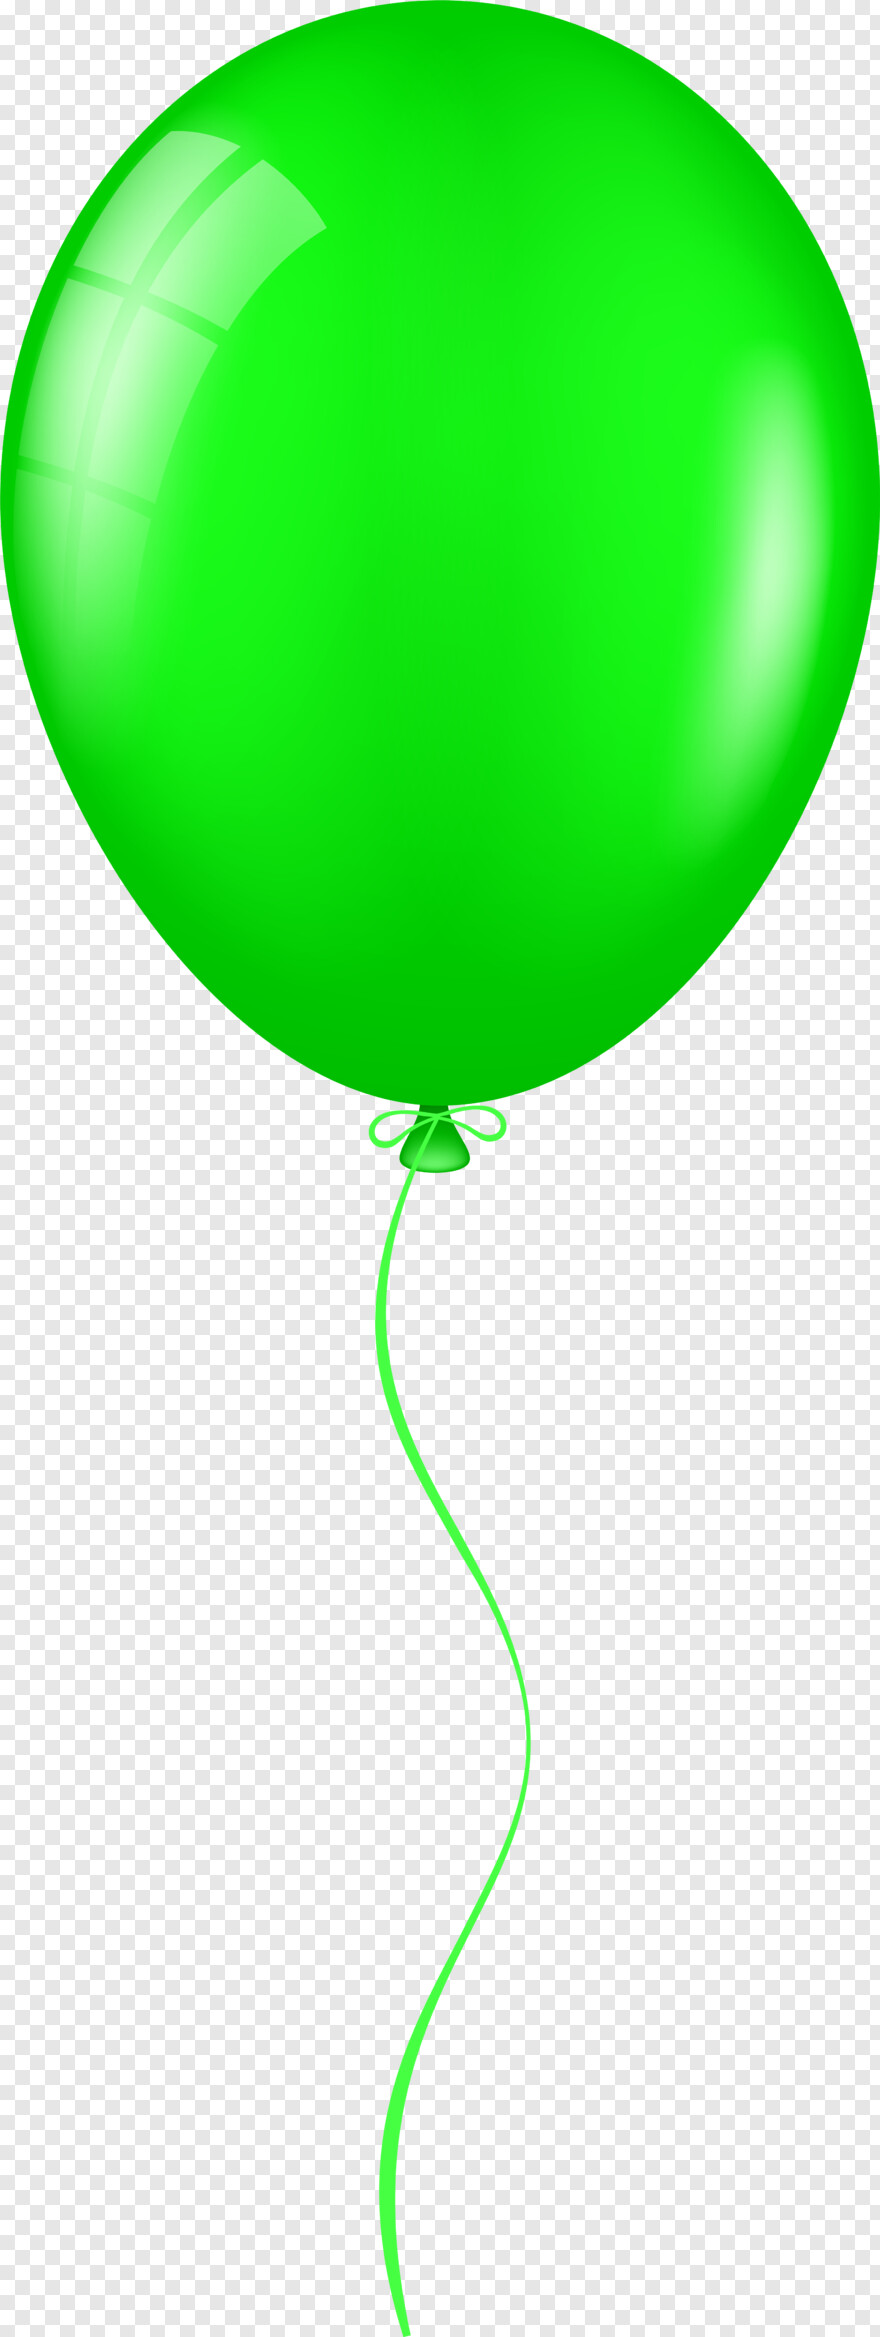 water-balloon # 415719